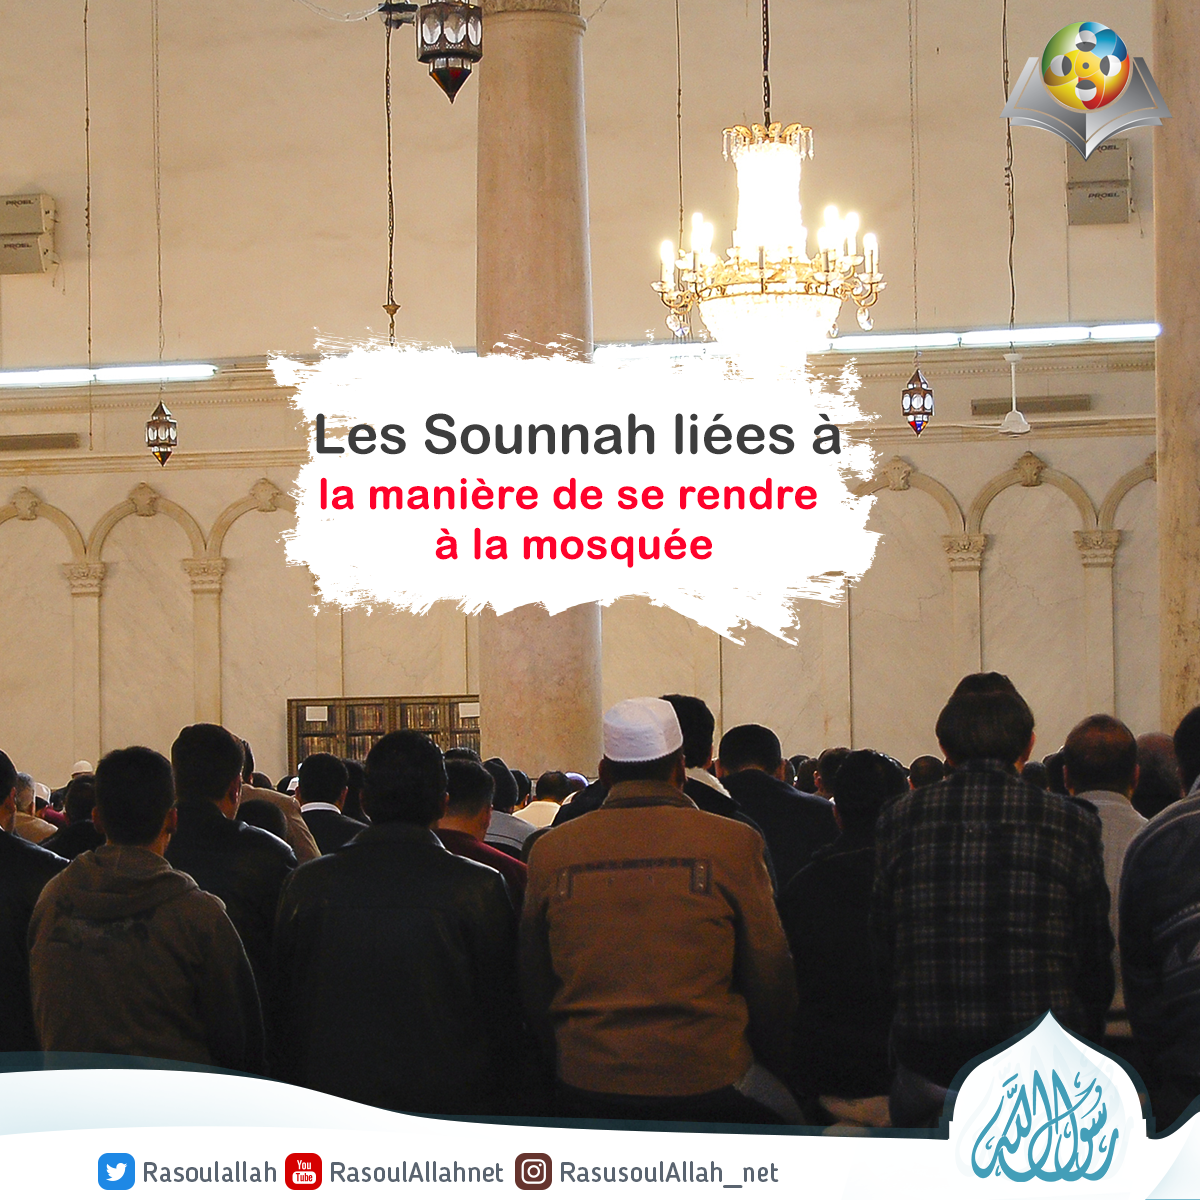 Les Sounnah liées à la manière de se rendre à la mosquée